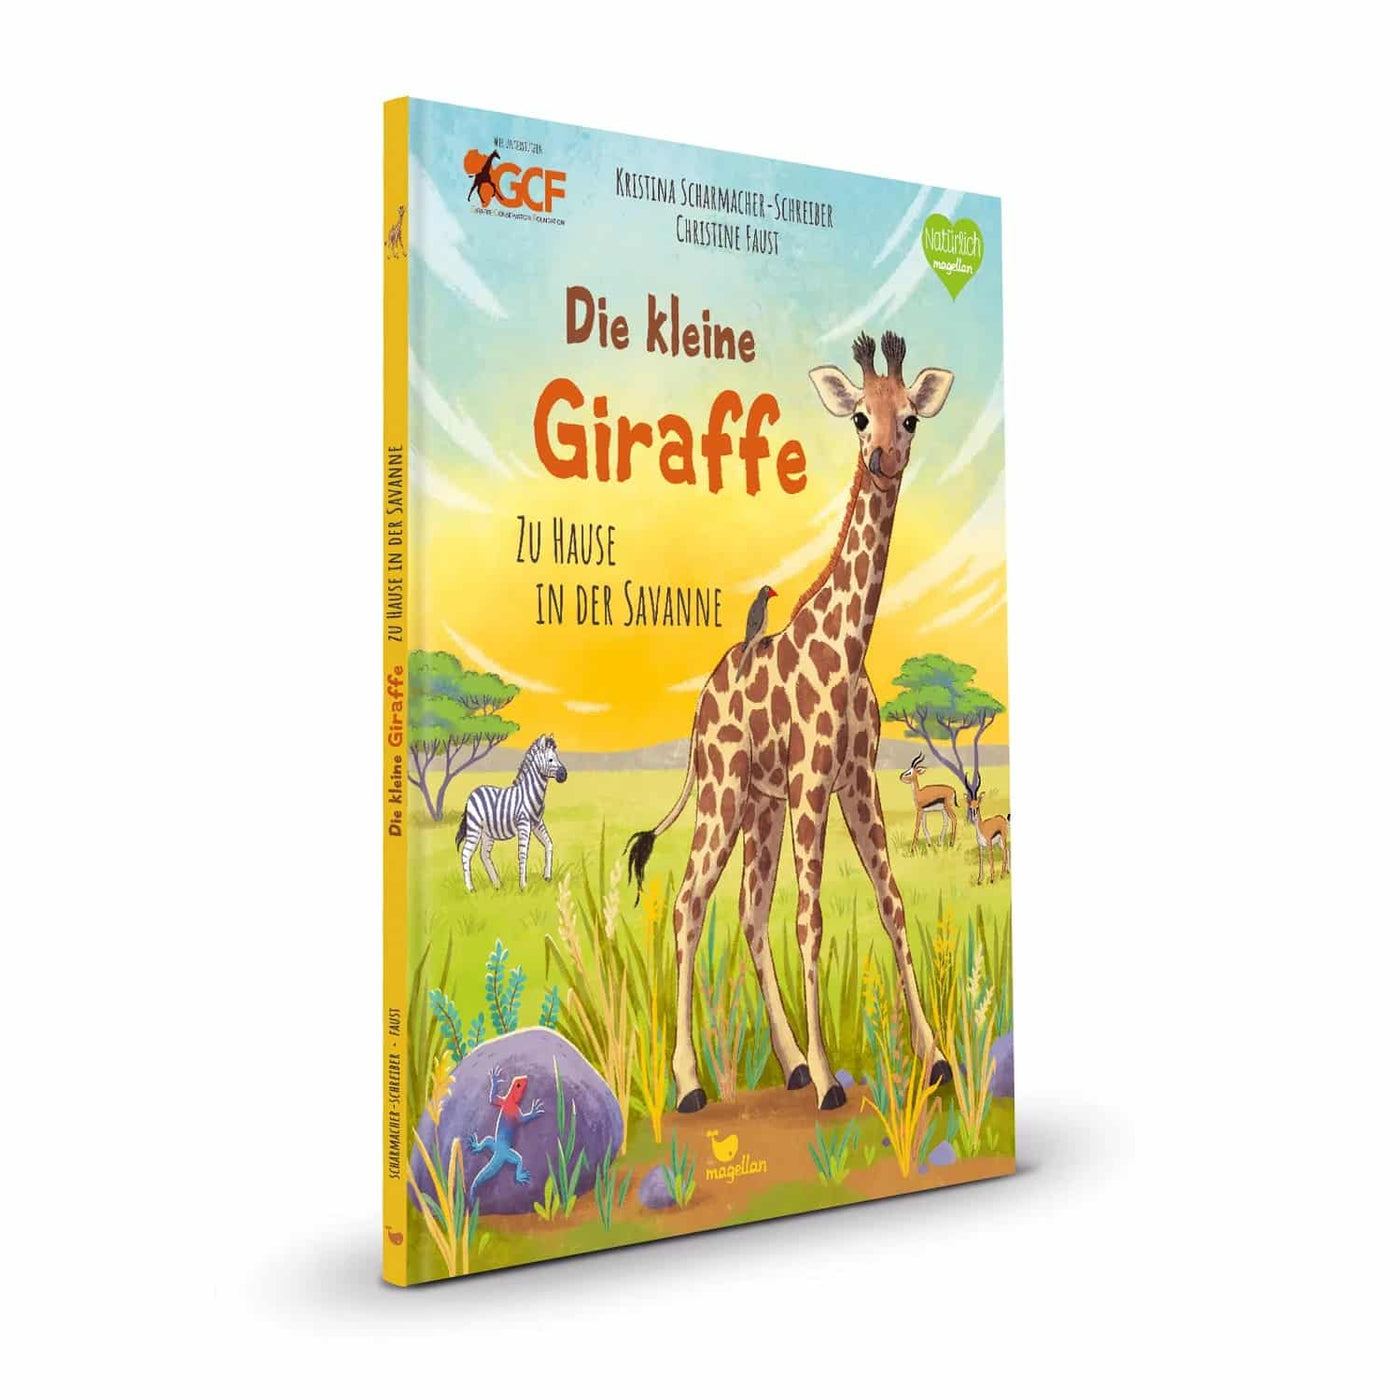 Scharmacher-Schreiber und Faust Die kleine Giraffe - Zu Hause in der Savanne